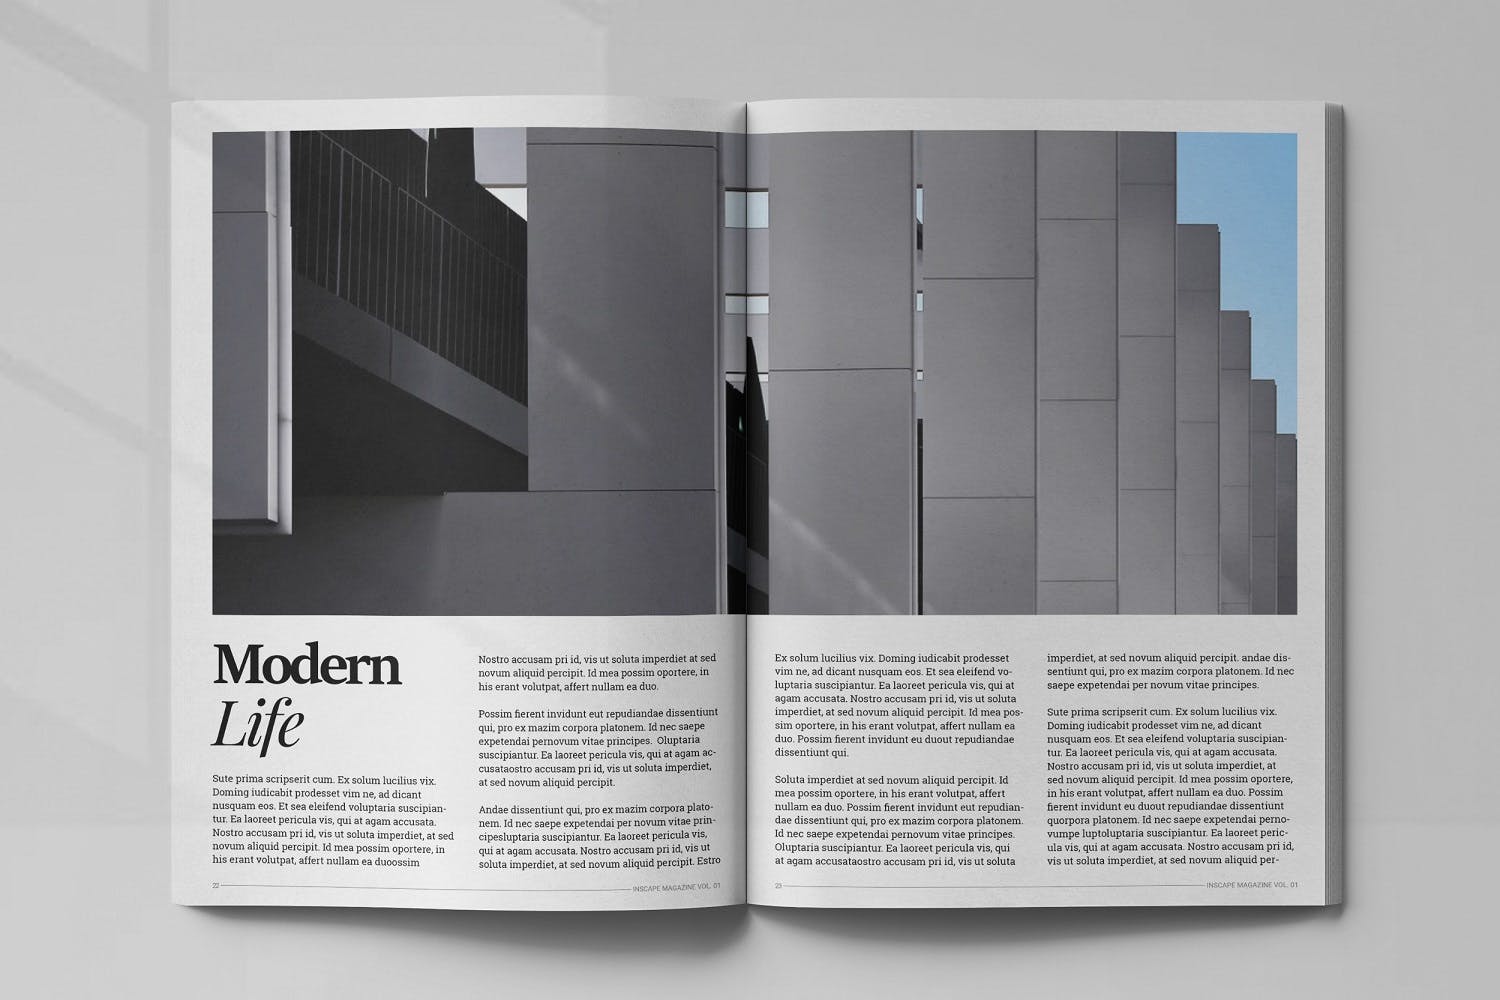 室内设计主题素材中国精选杂志排版设计模板 Inscape Interior Magazine插图(11)